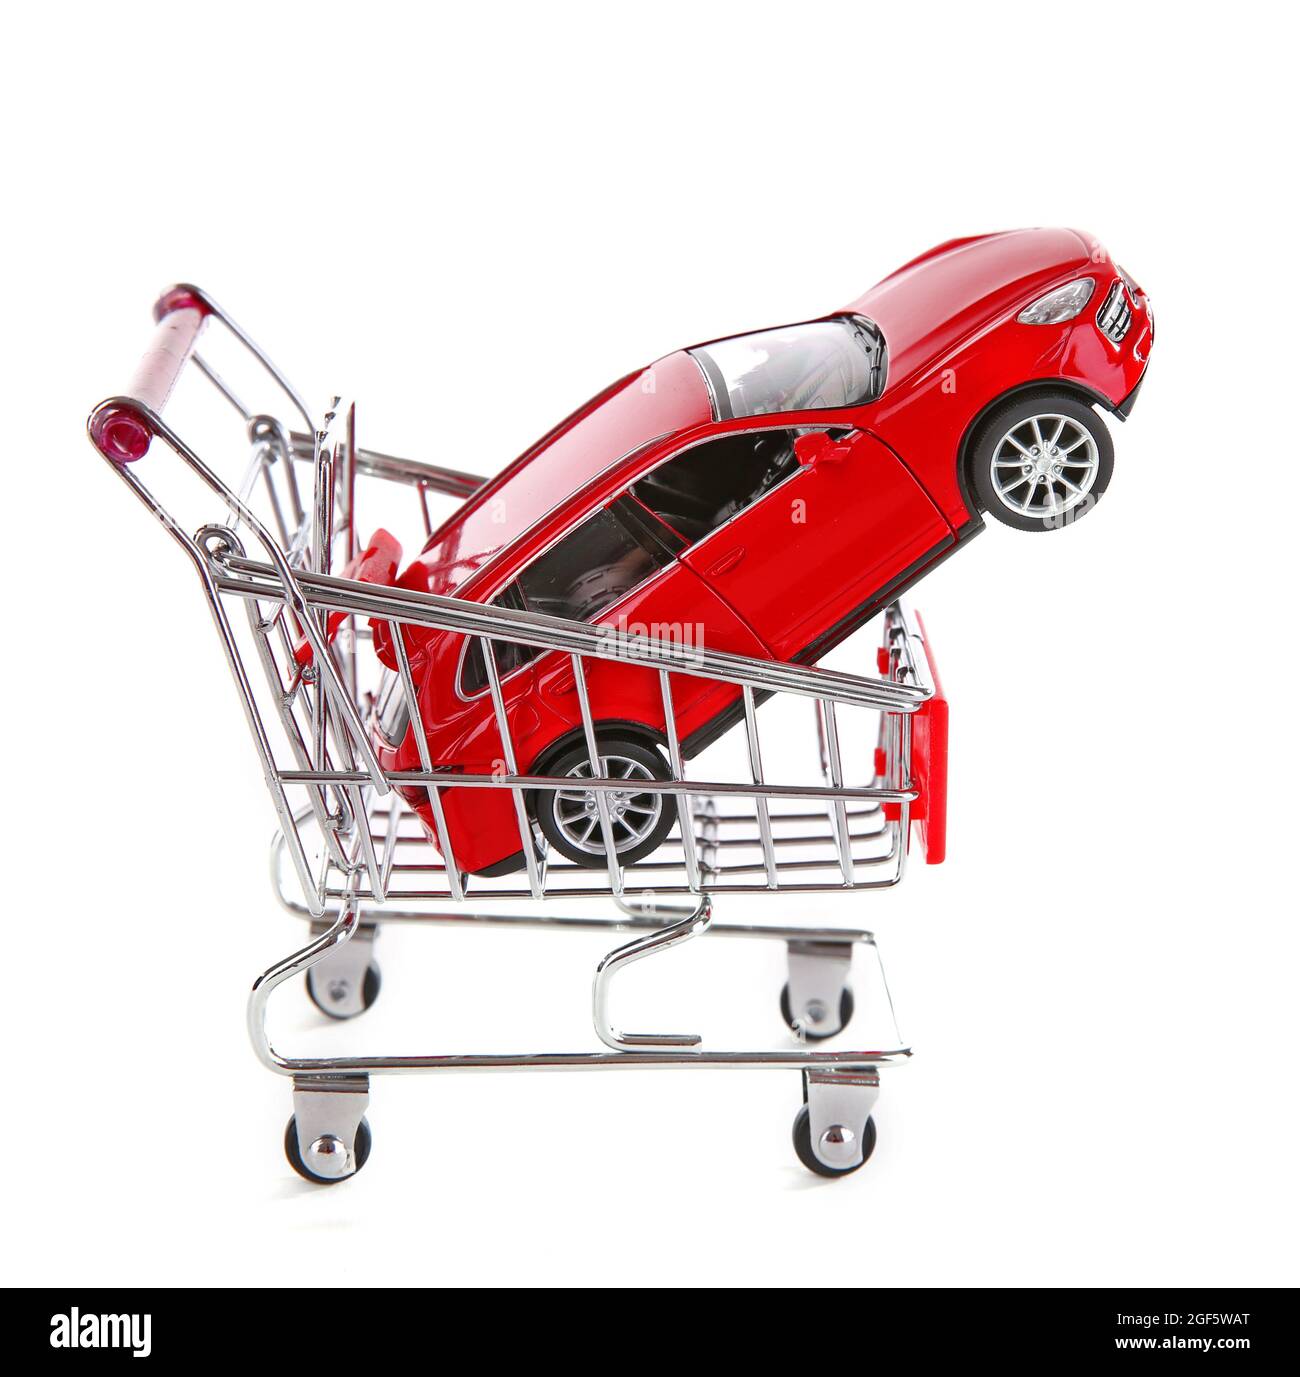 Rotes Auto in Einkaufswagen, isoliert auf weiß Stockfotografie - Alamy